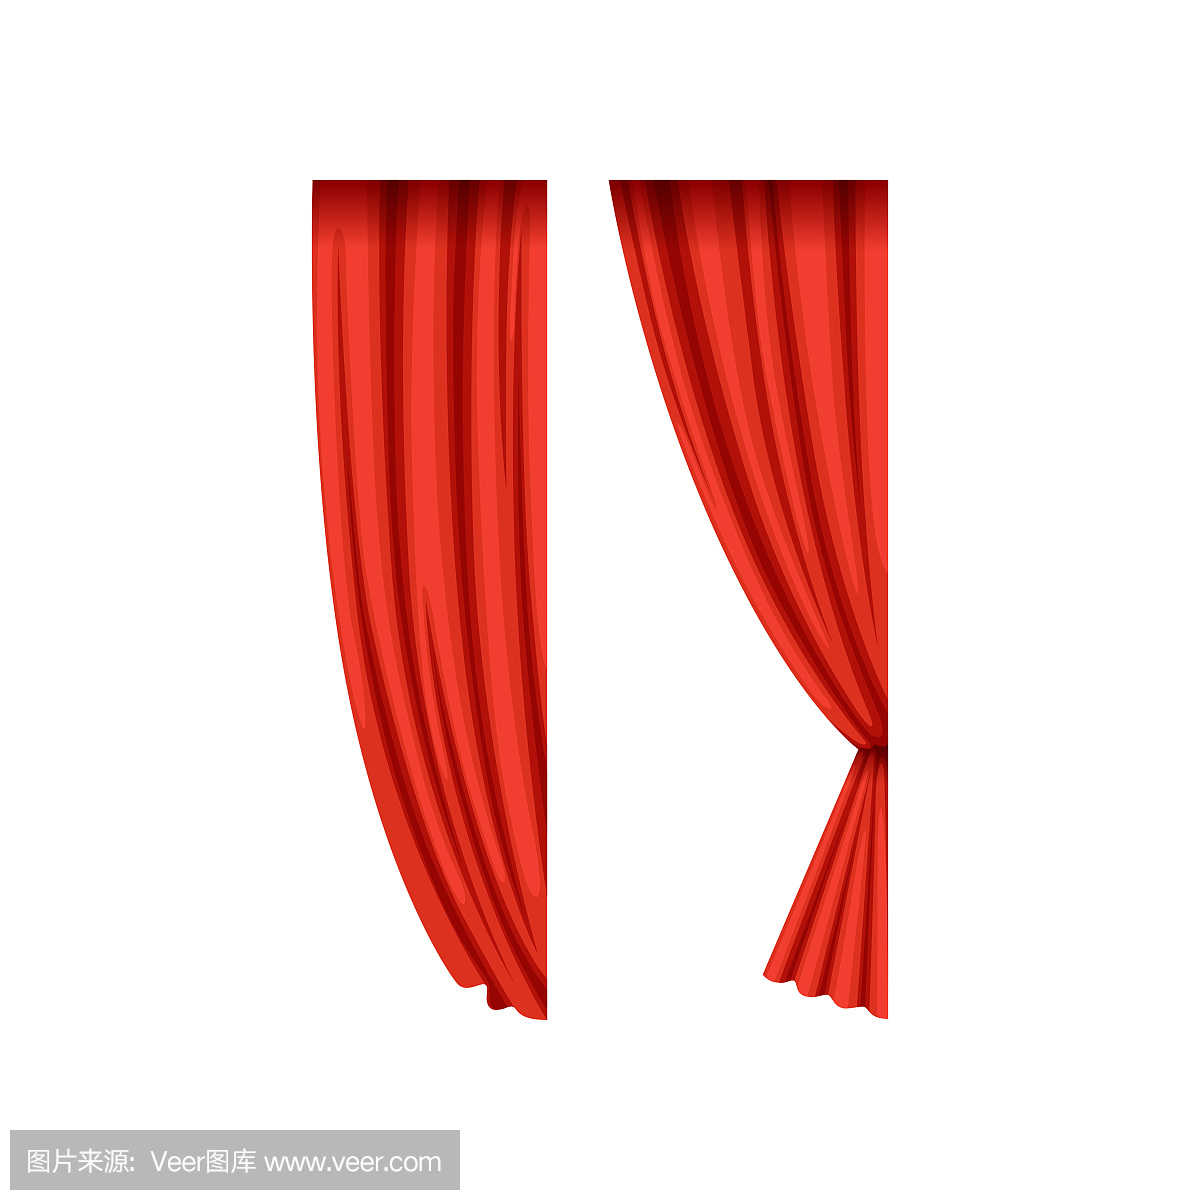 舞台右侧的红色丝绸或天鹅绒戏剧窗帘的图标。